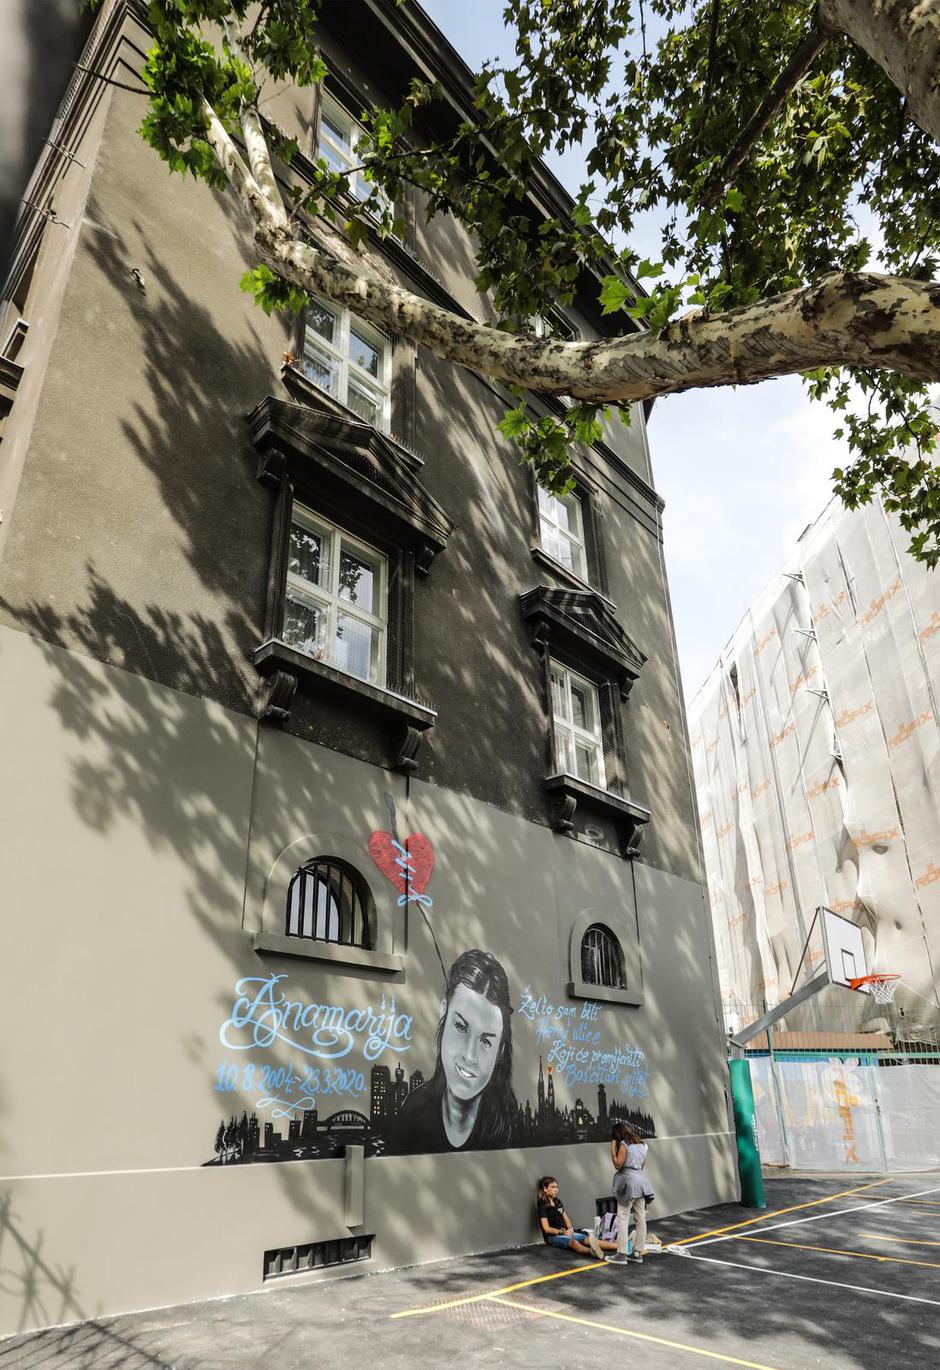 Zagreb: Mural posvećen djevojčici Anamariji Carević koja je život izgubila u potresu 2020. godine